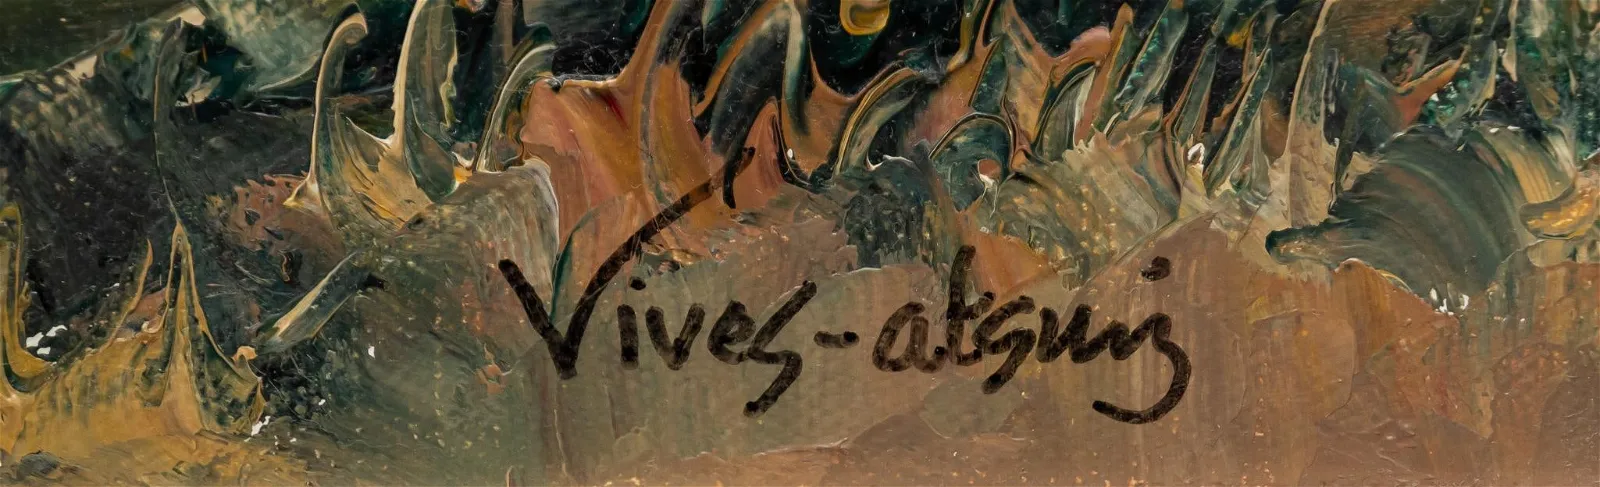 Vikki Carr | Jose Vives-Atsara, "Sunset Over the Rio Bravo", 1996